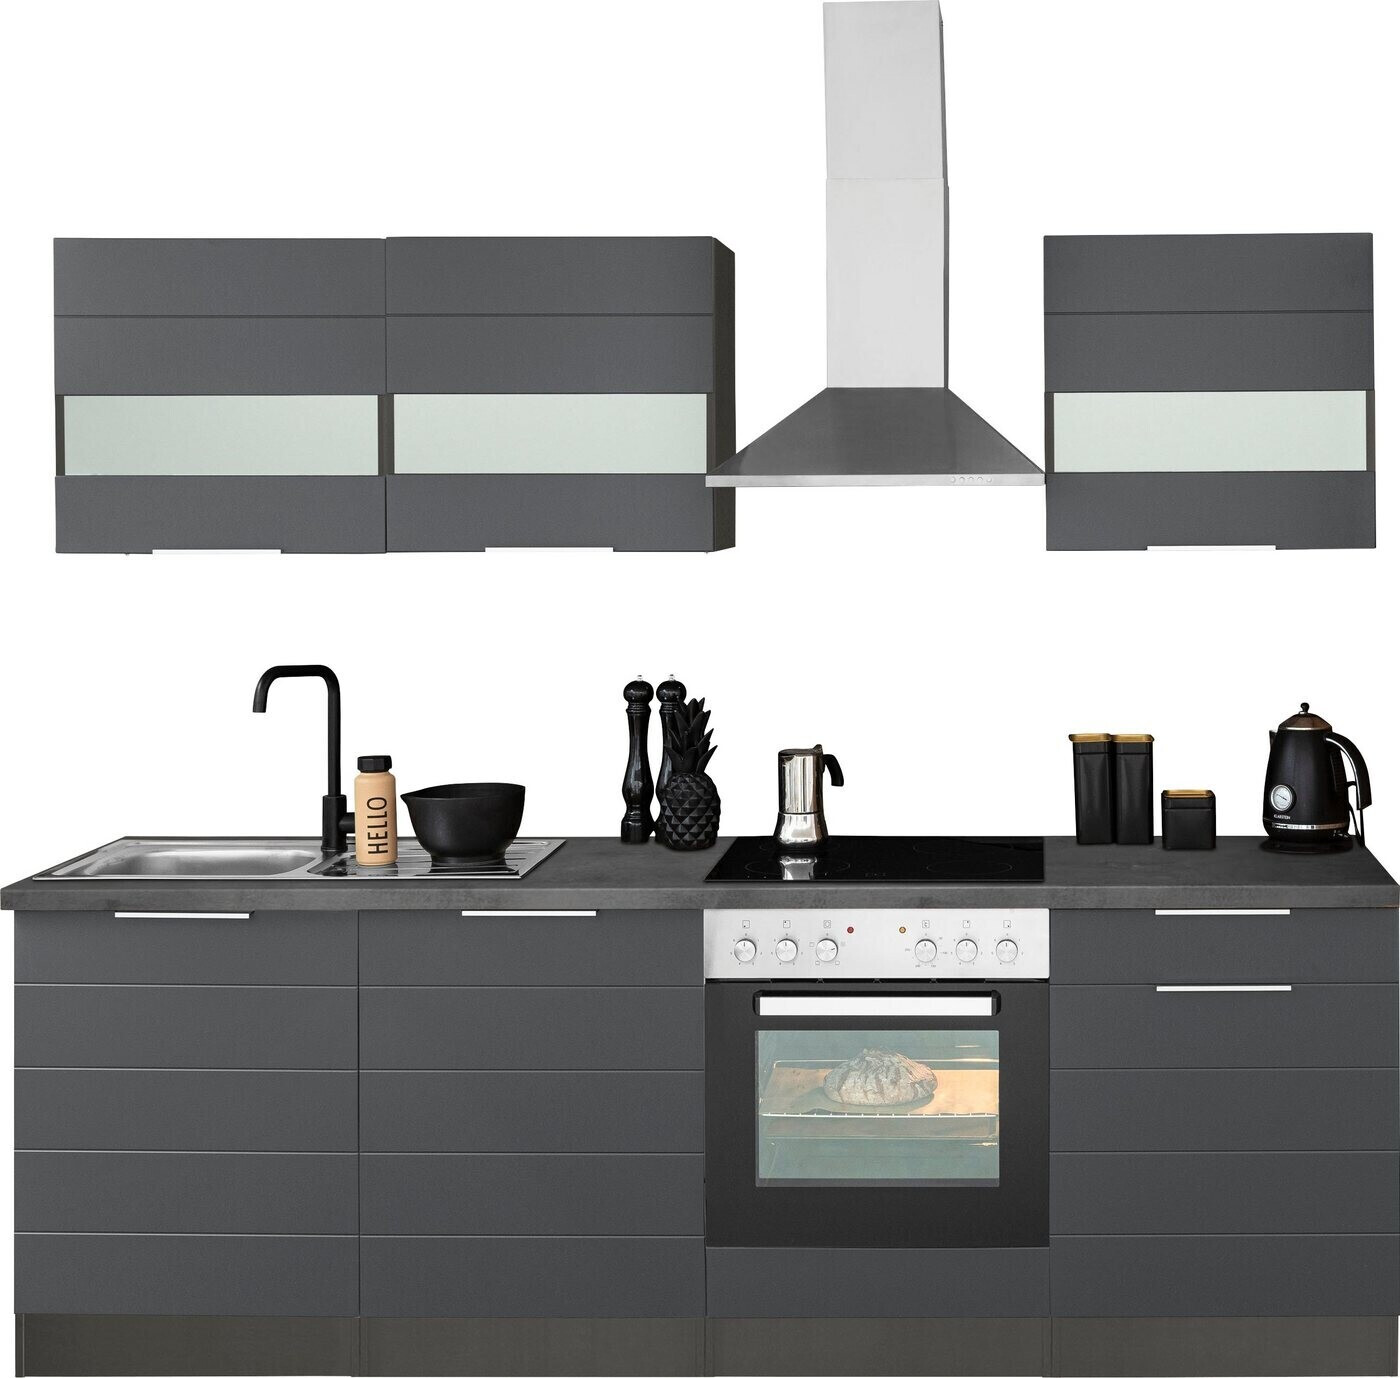 Held Möbel | Komplettküchen-Sets 1.130,49 grafit matt 240 € bei Preisvergleich oxid weiß stone cm ab Luhe